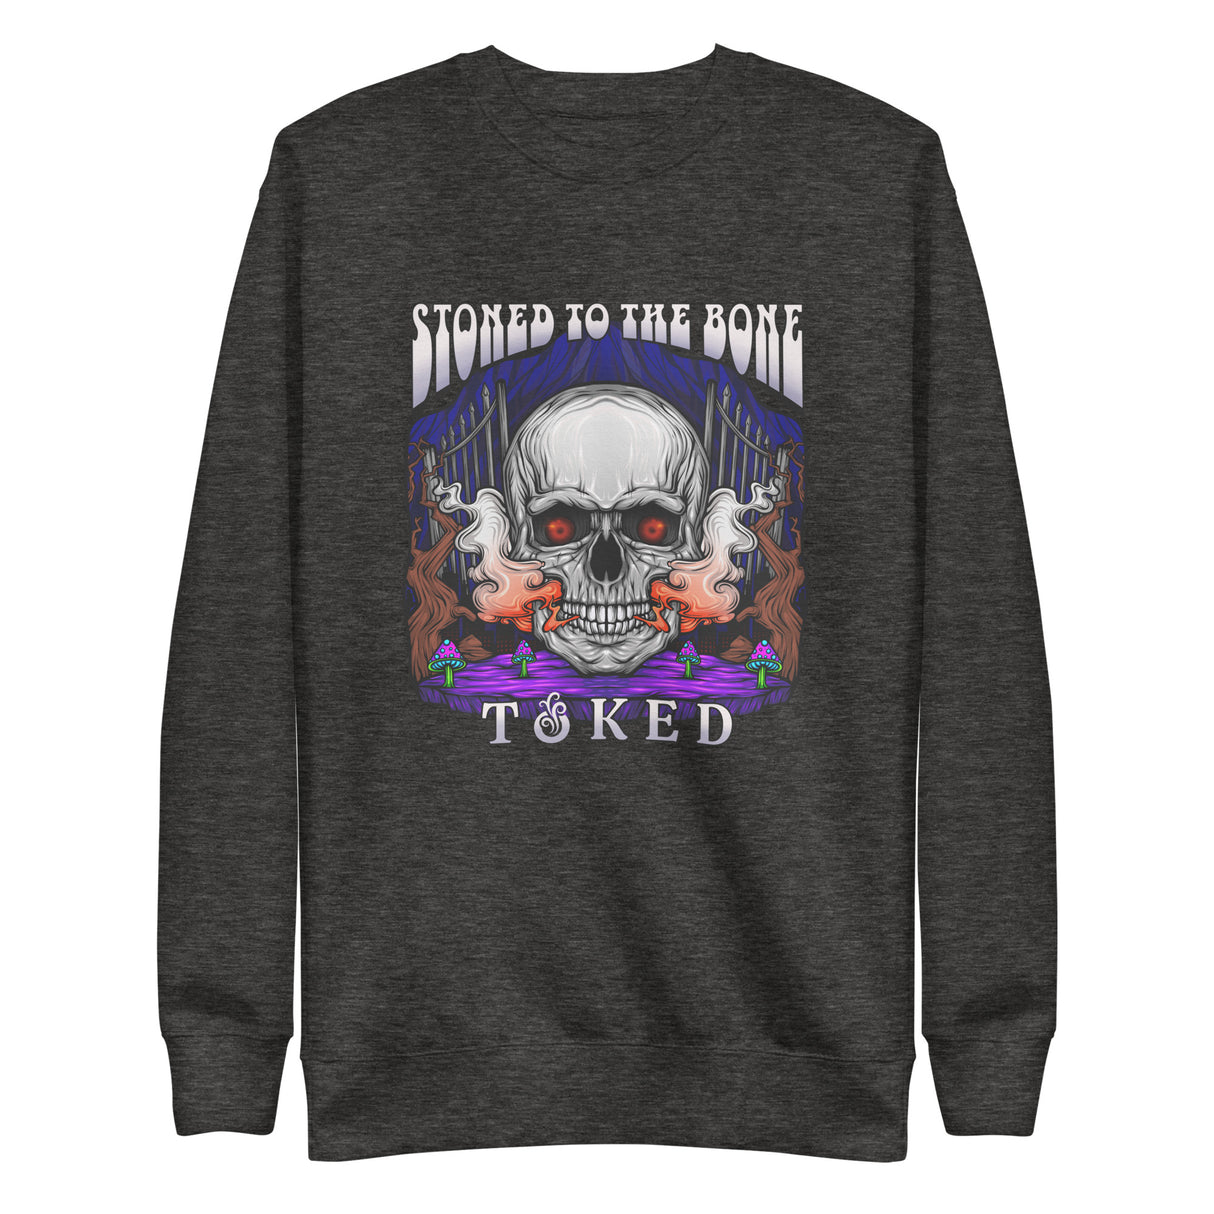 Stoned to the Bone Sweatshirt